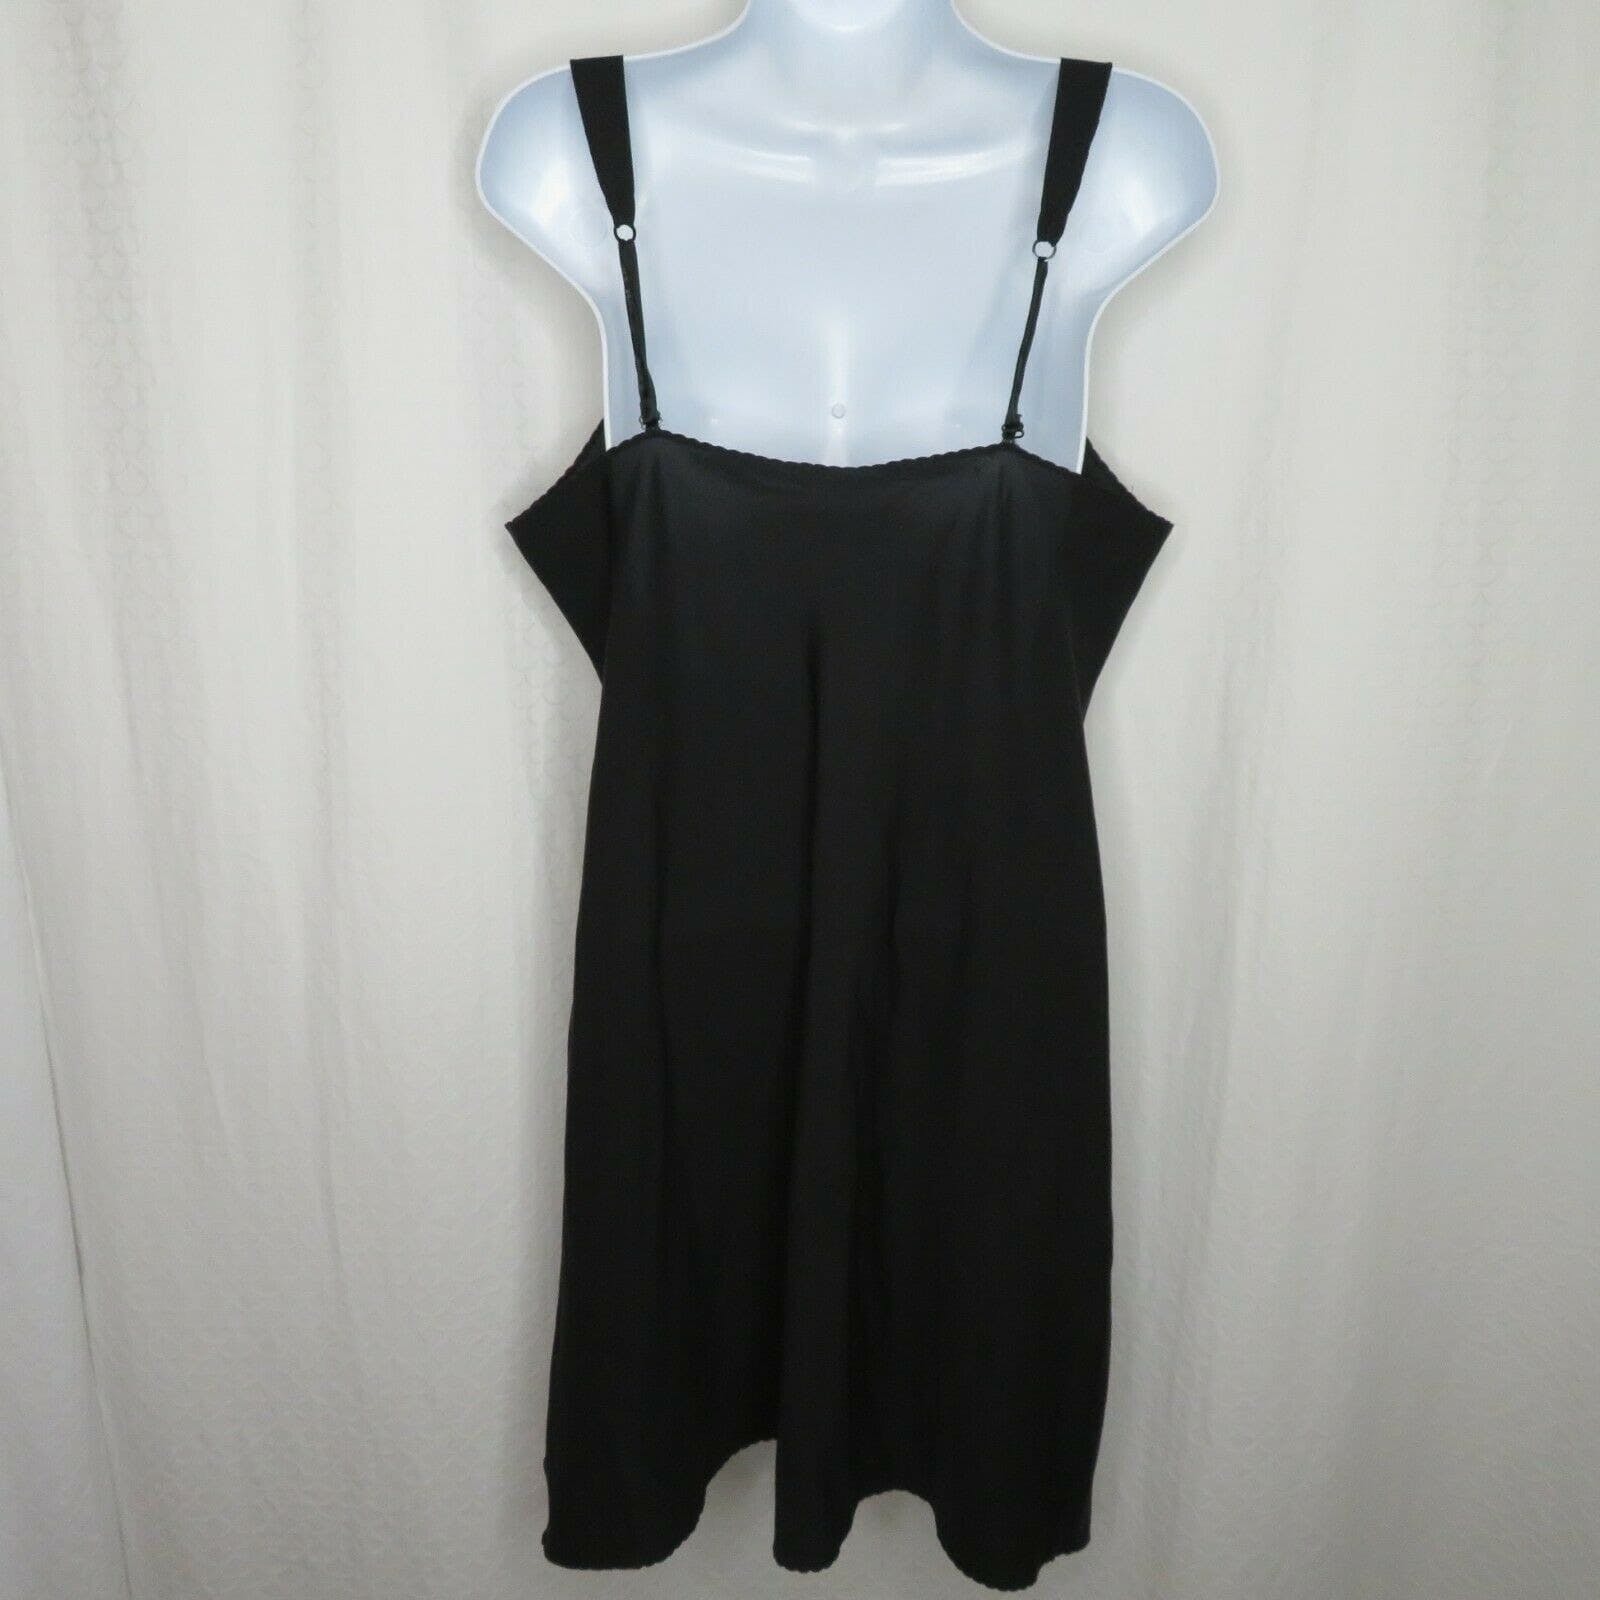 Vintage Black Slip Nightgown Full Slip Dress By Vanity Fair | Shop ...